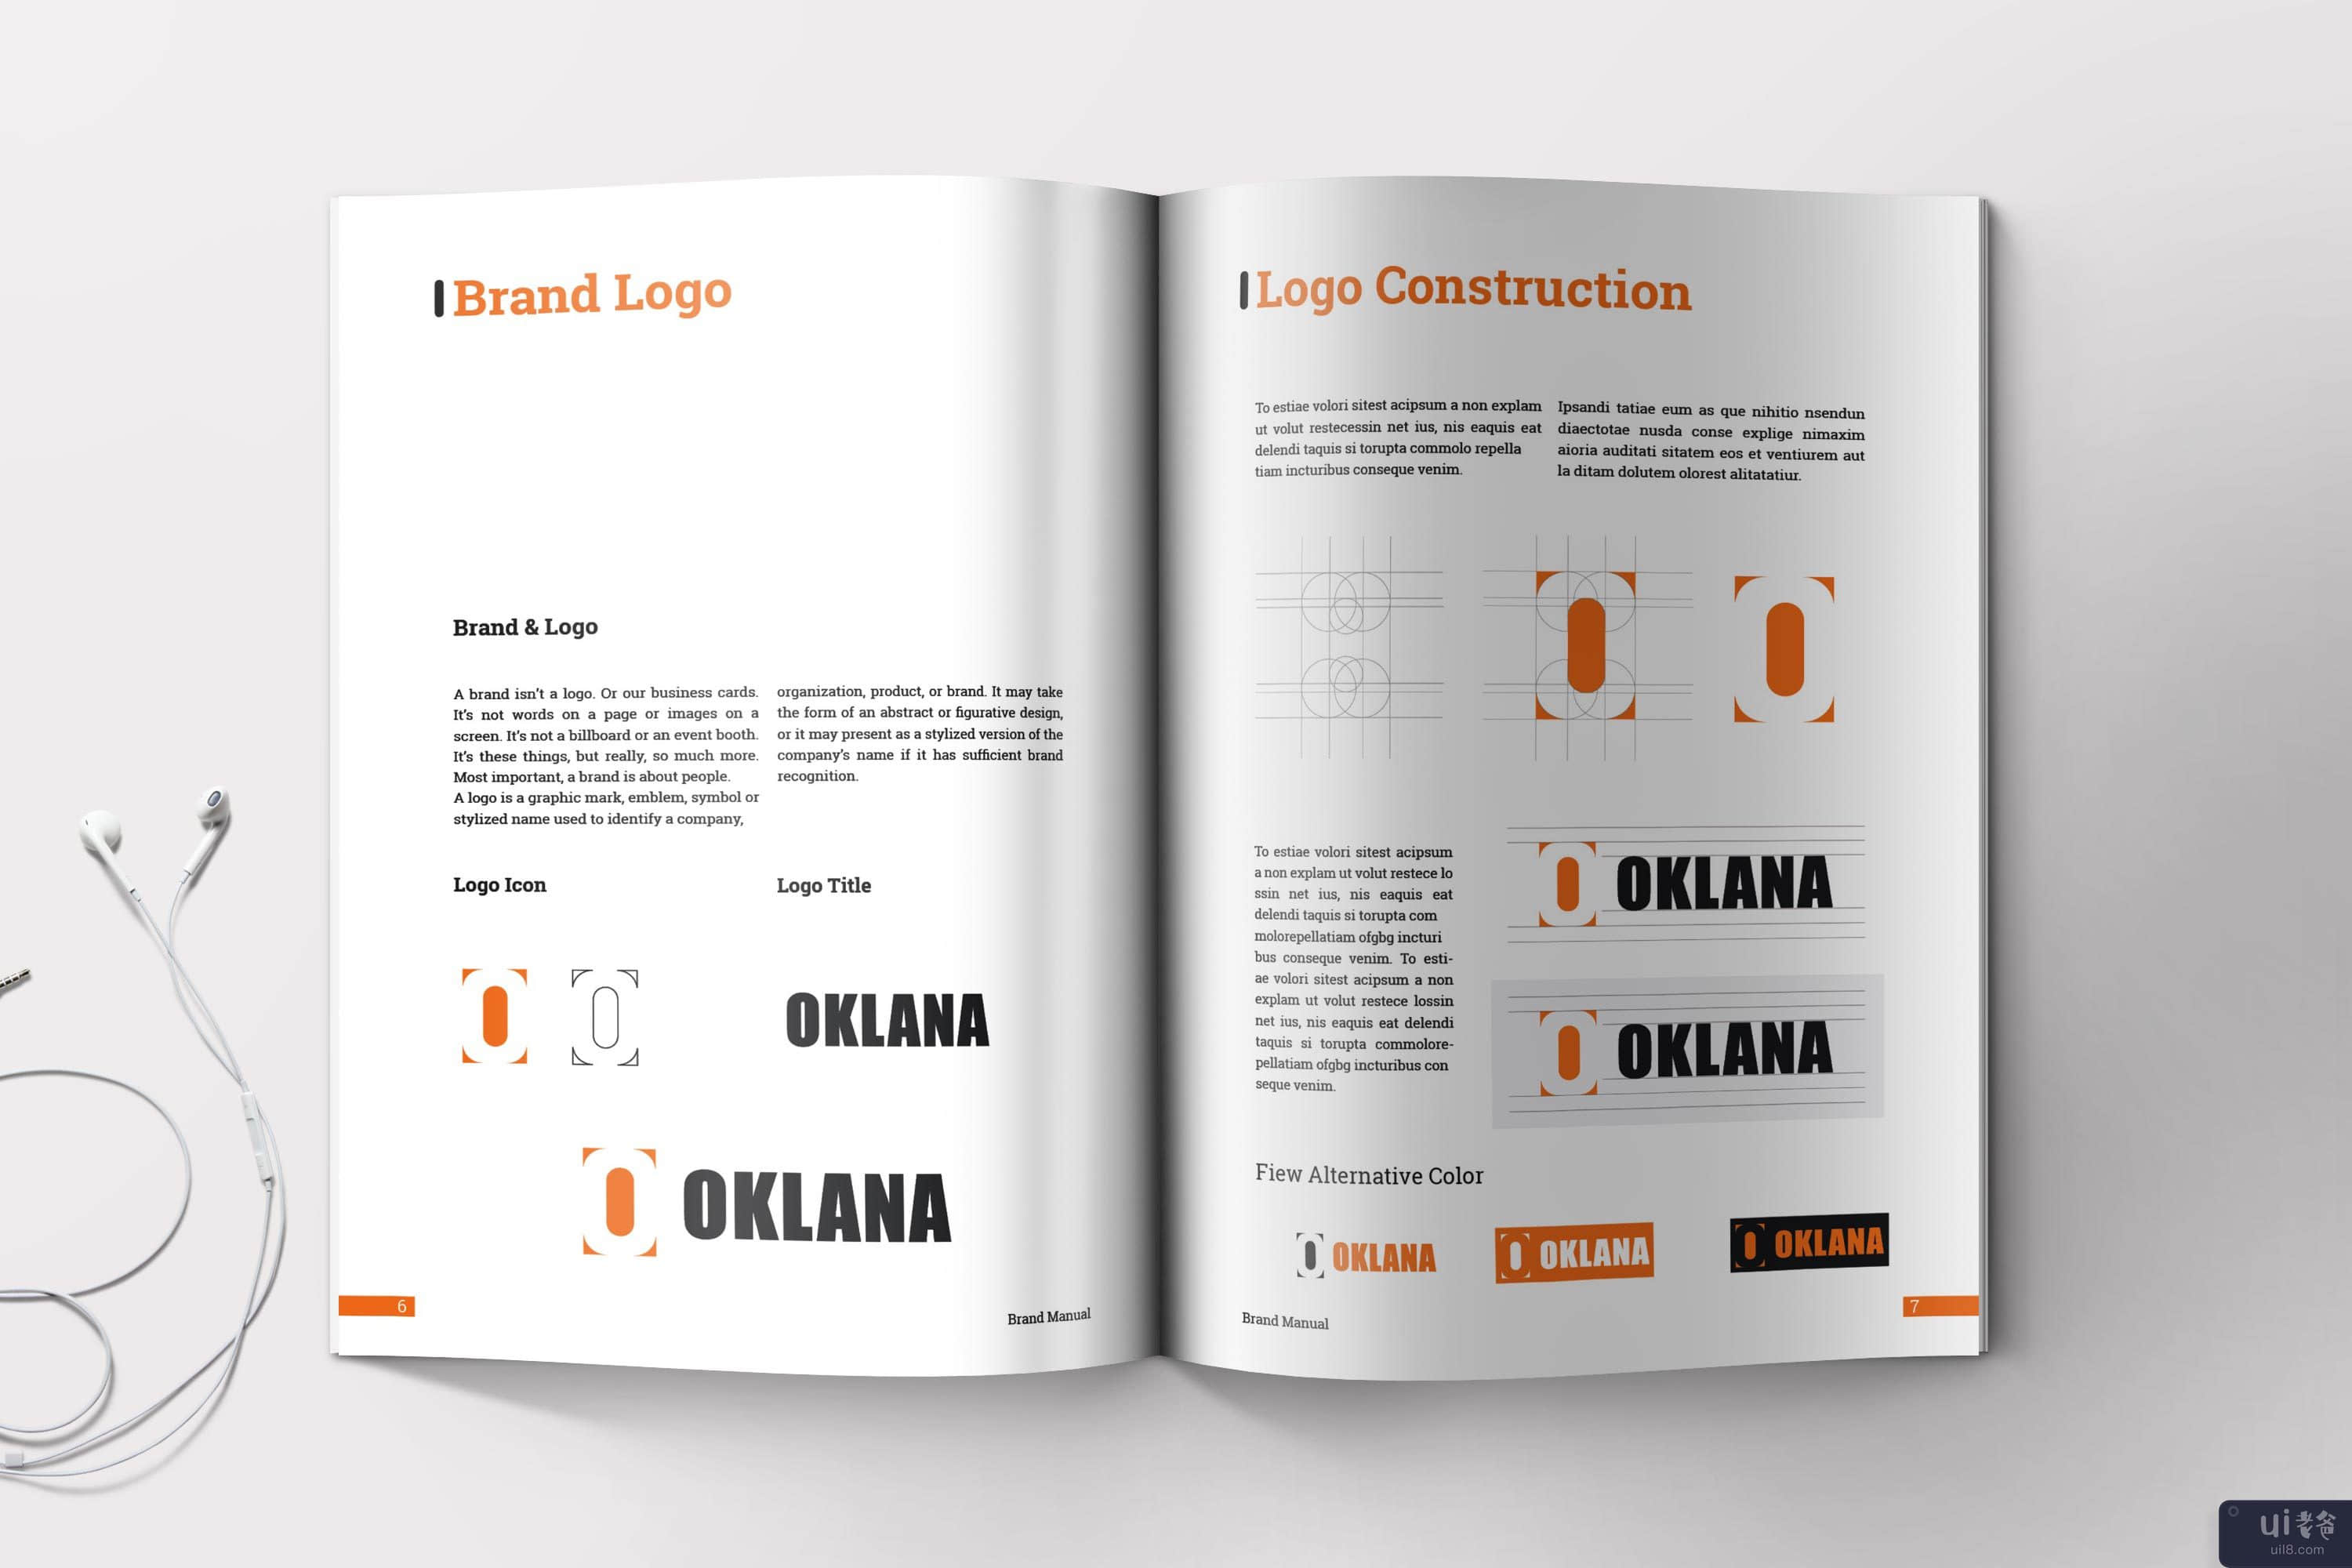 品牌手册指南 | InDesign 模板(Brand Manual Guideline | InDesign Template)插图7